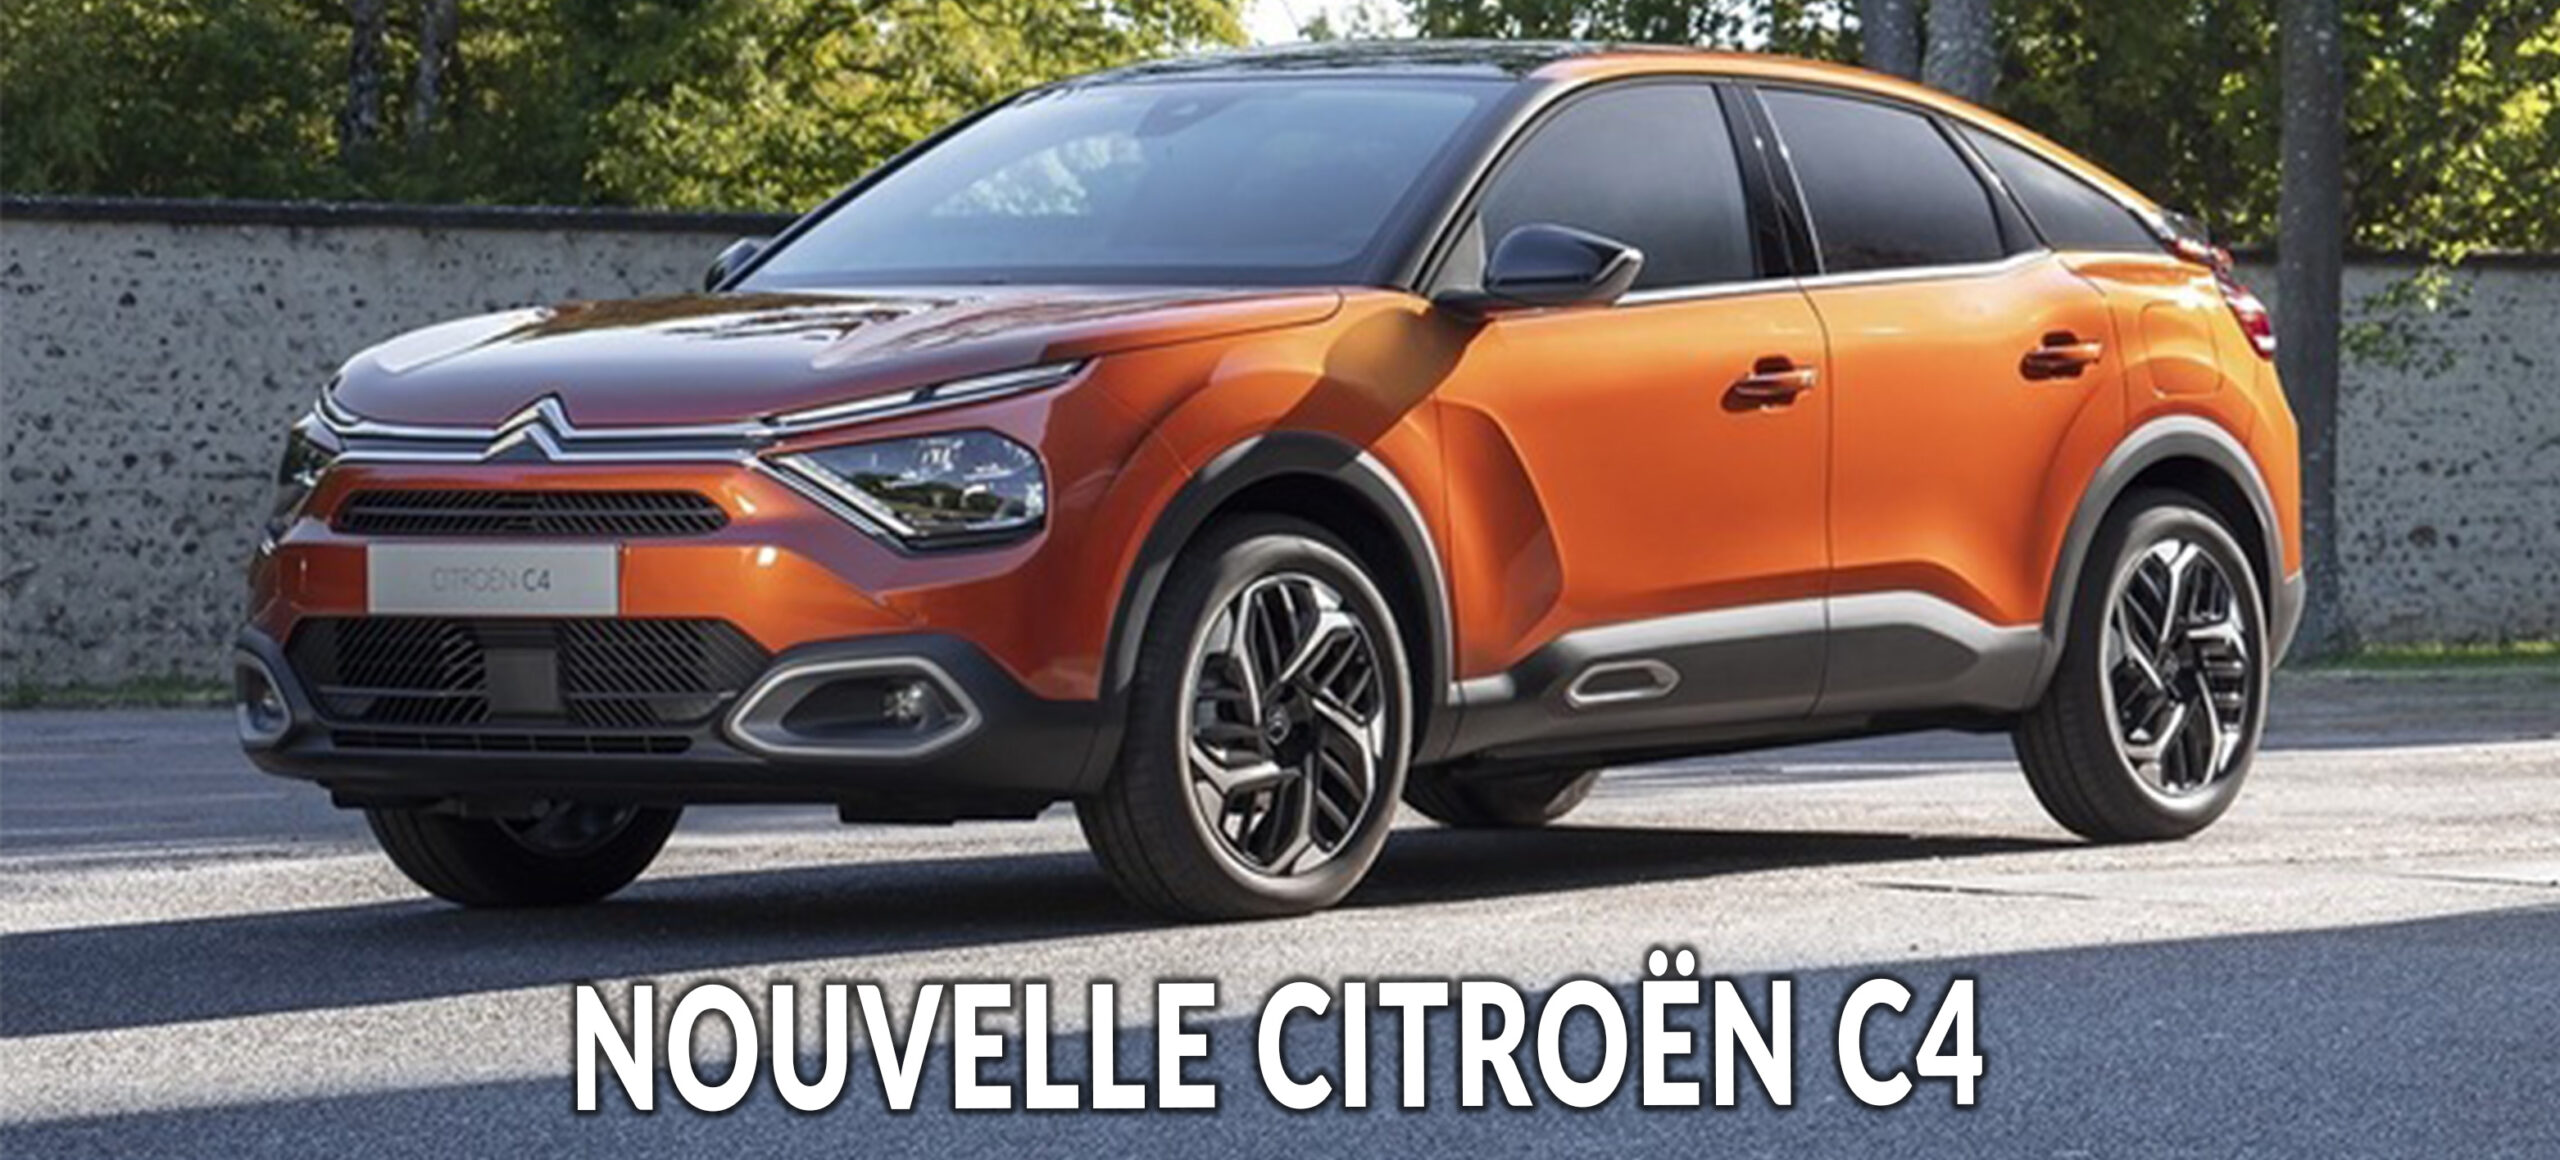 Citroën C4, la berline se dévoile